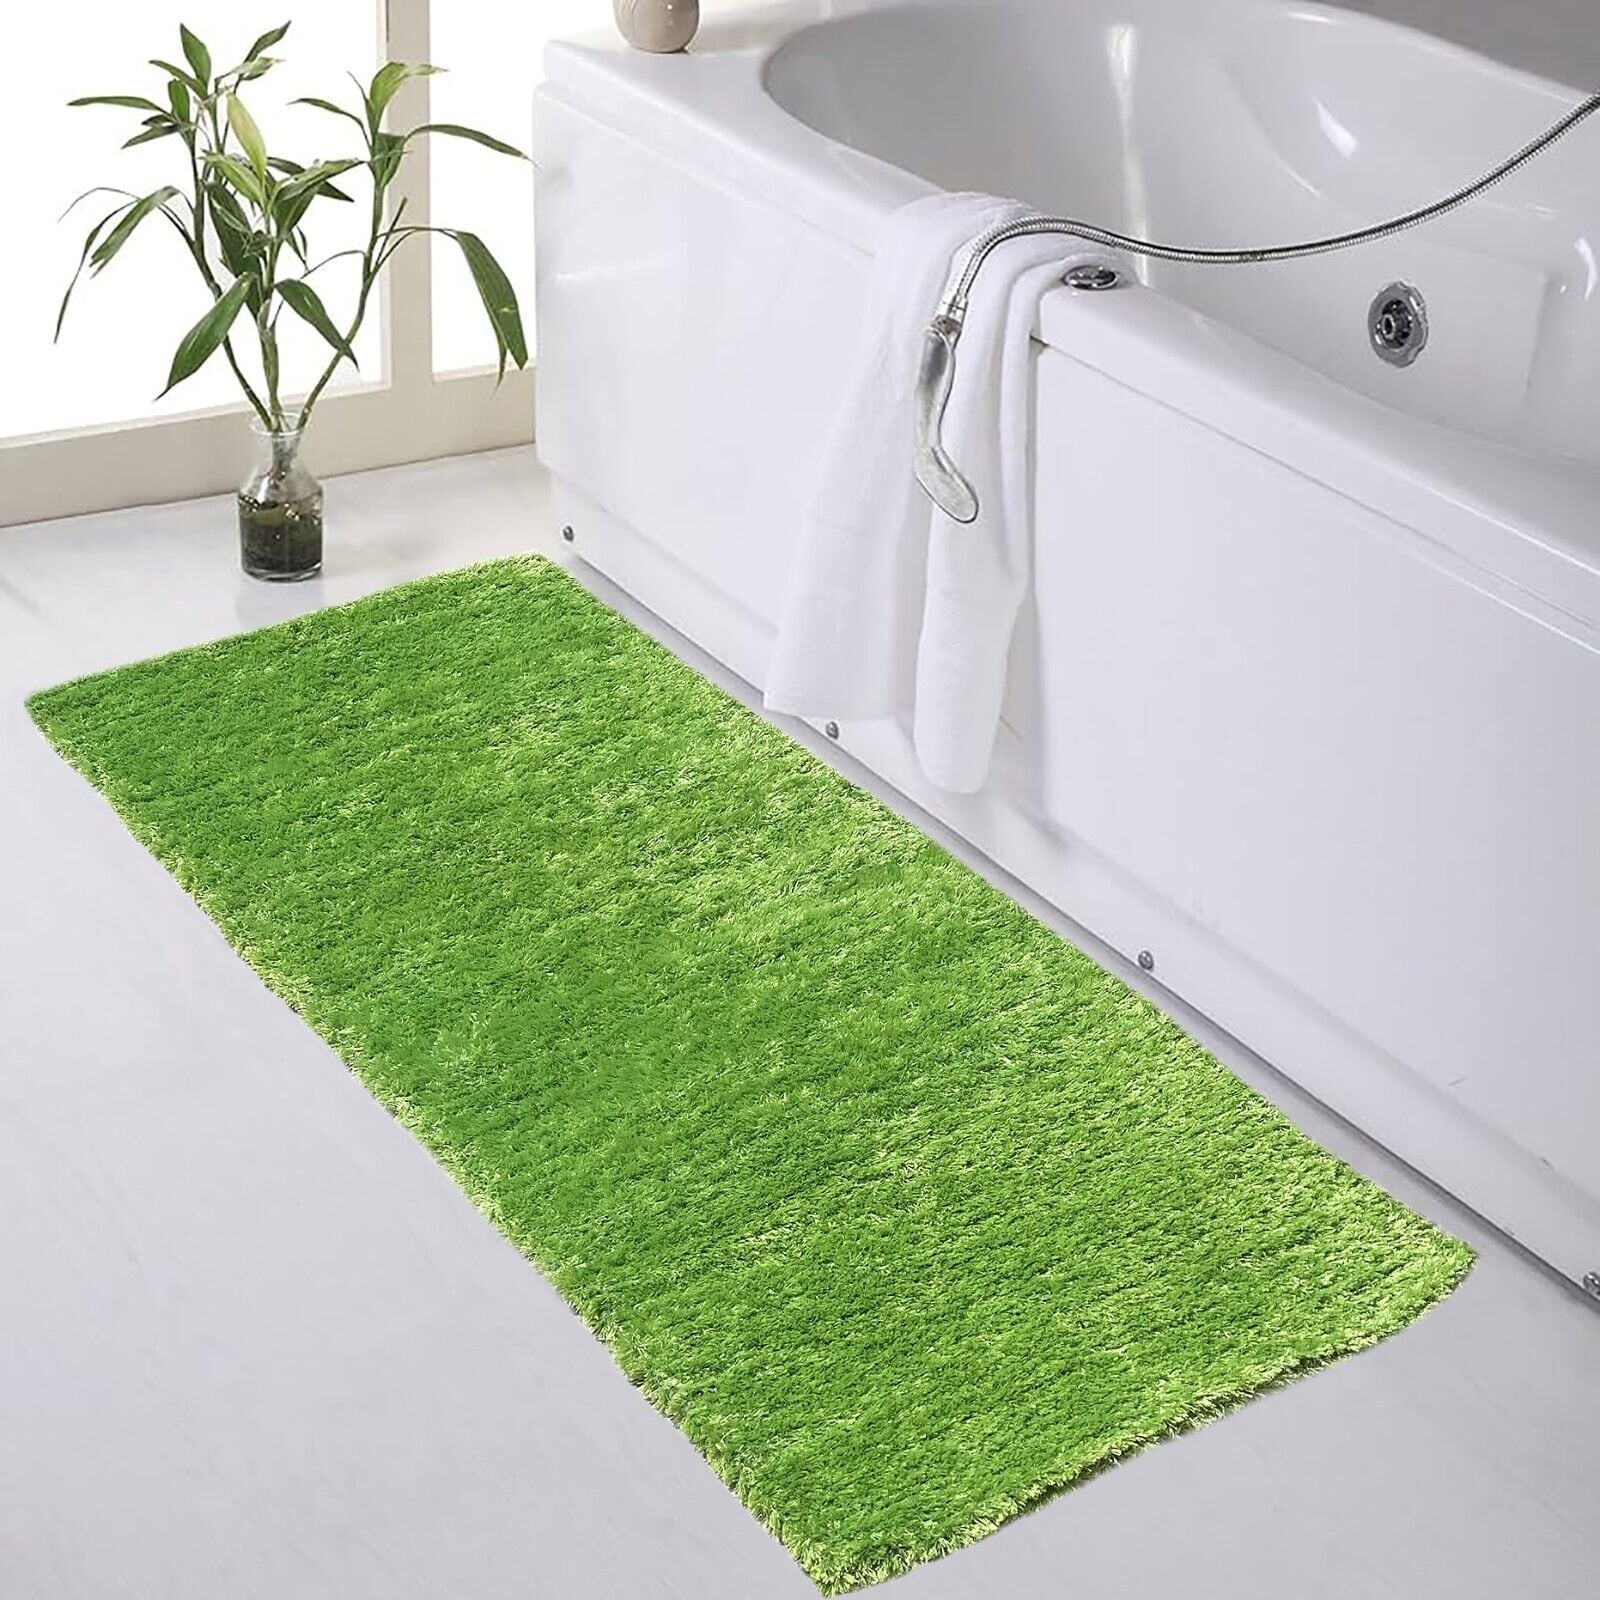 Green 2x5 Feet Long Soft Absorbent Bathroom Bath Mat Shimmer Shag